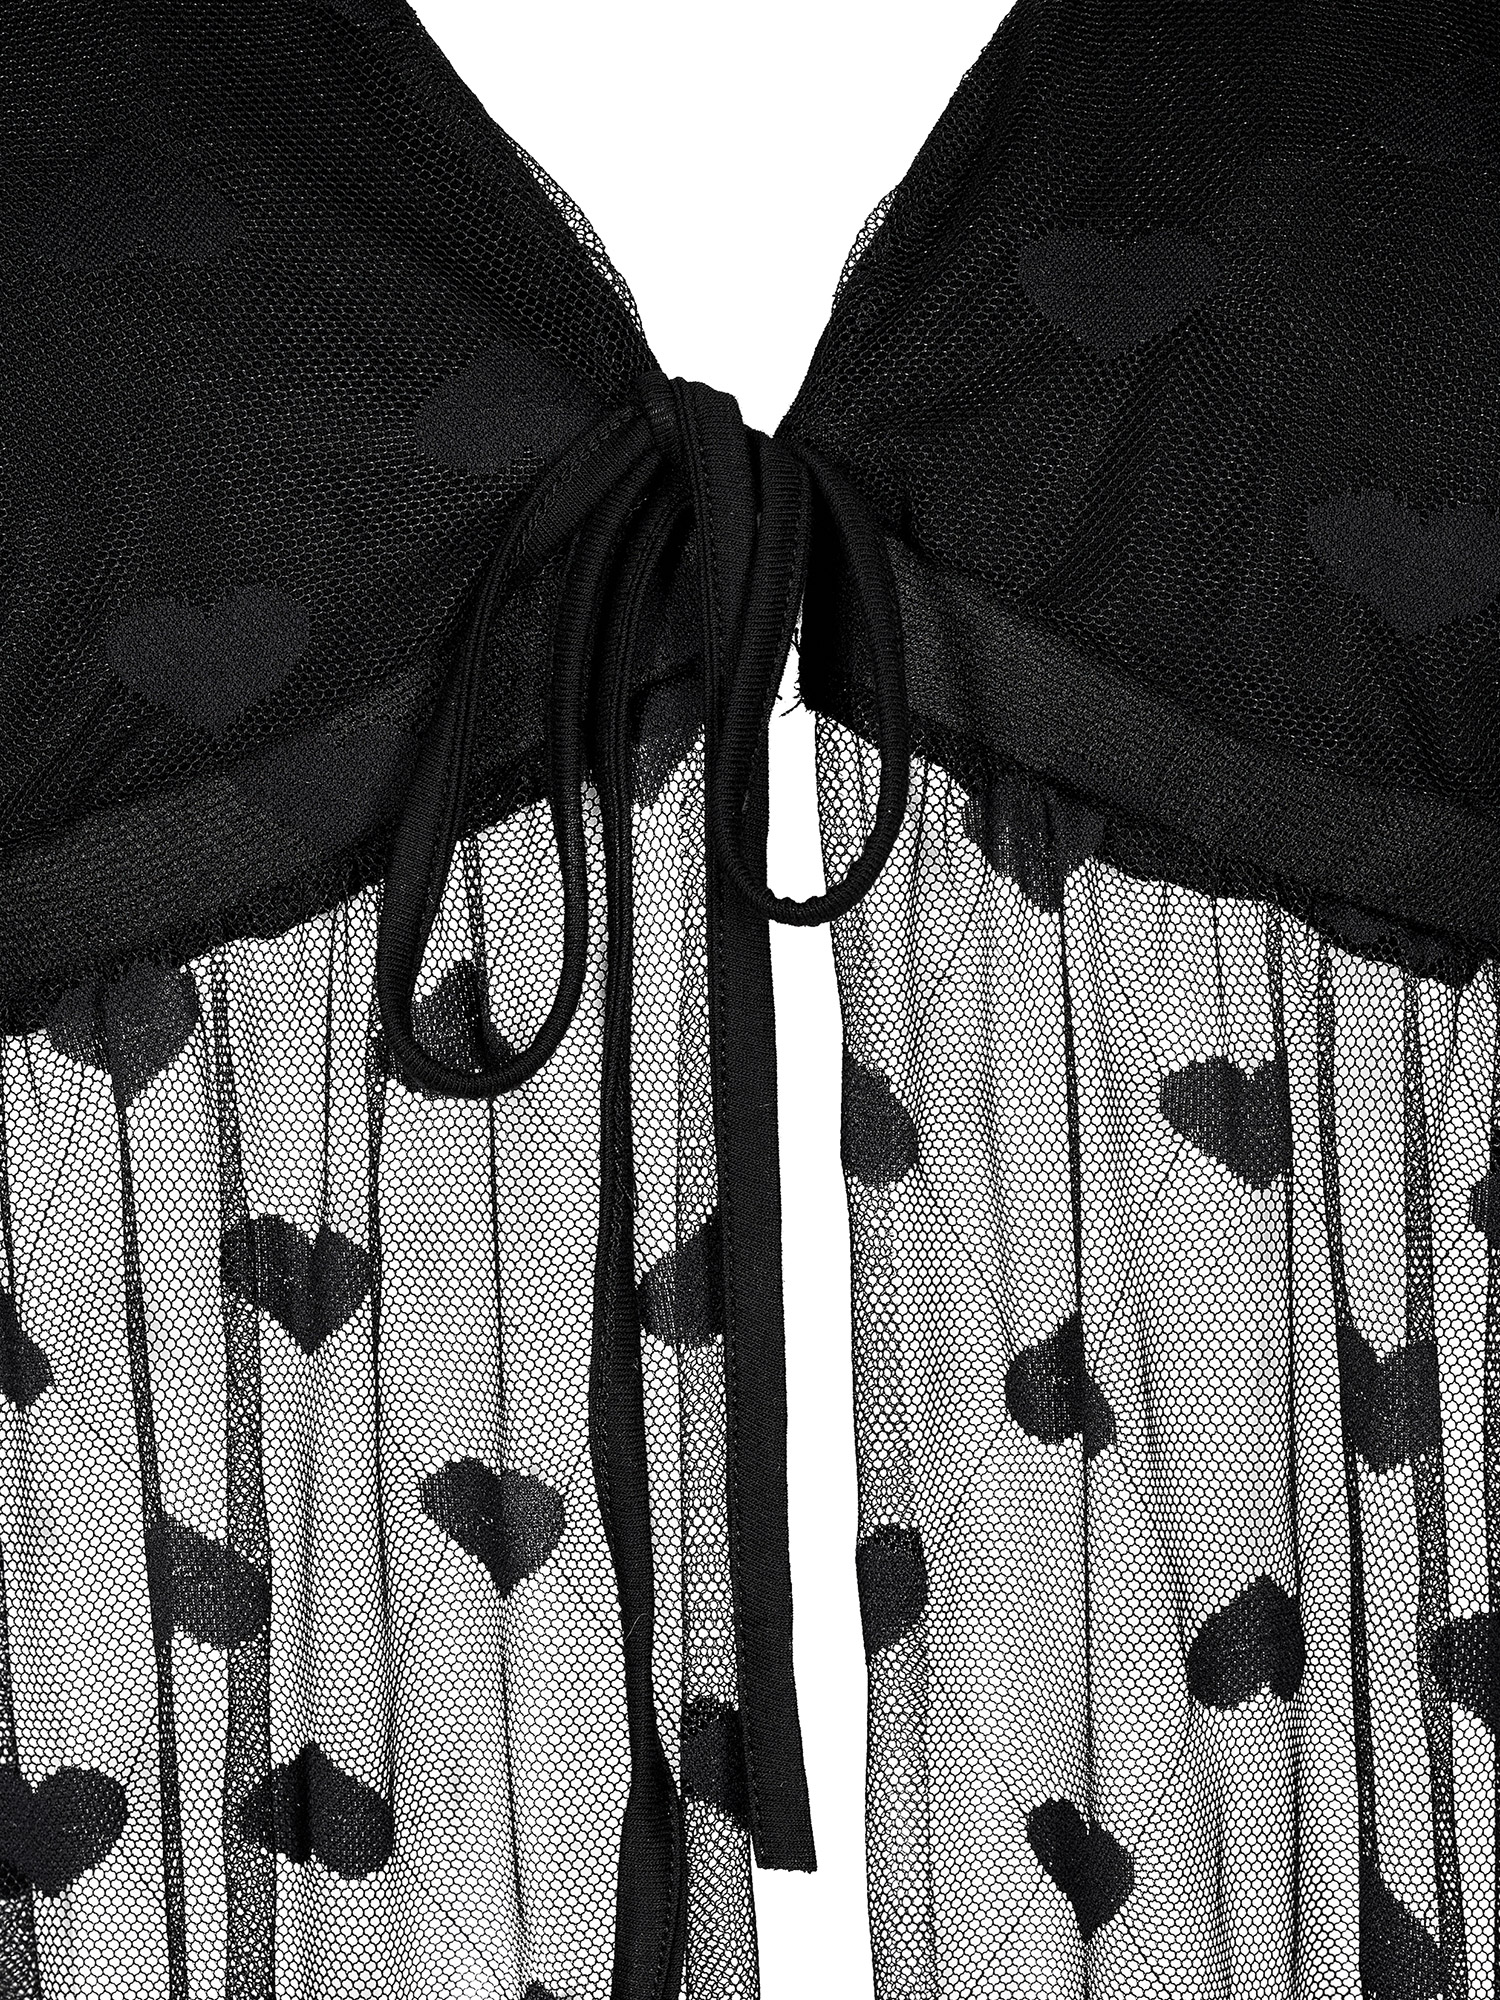 Svart nattkjole med hjerte mønster fra Zizzi